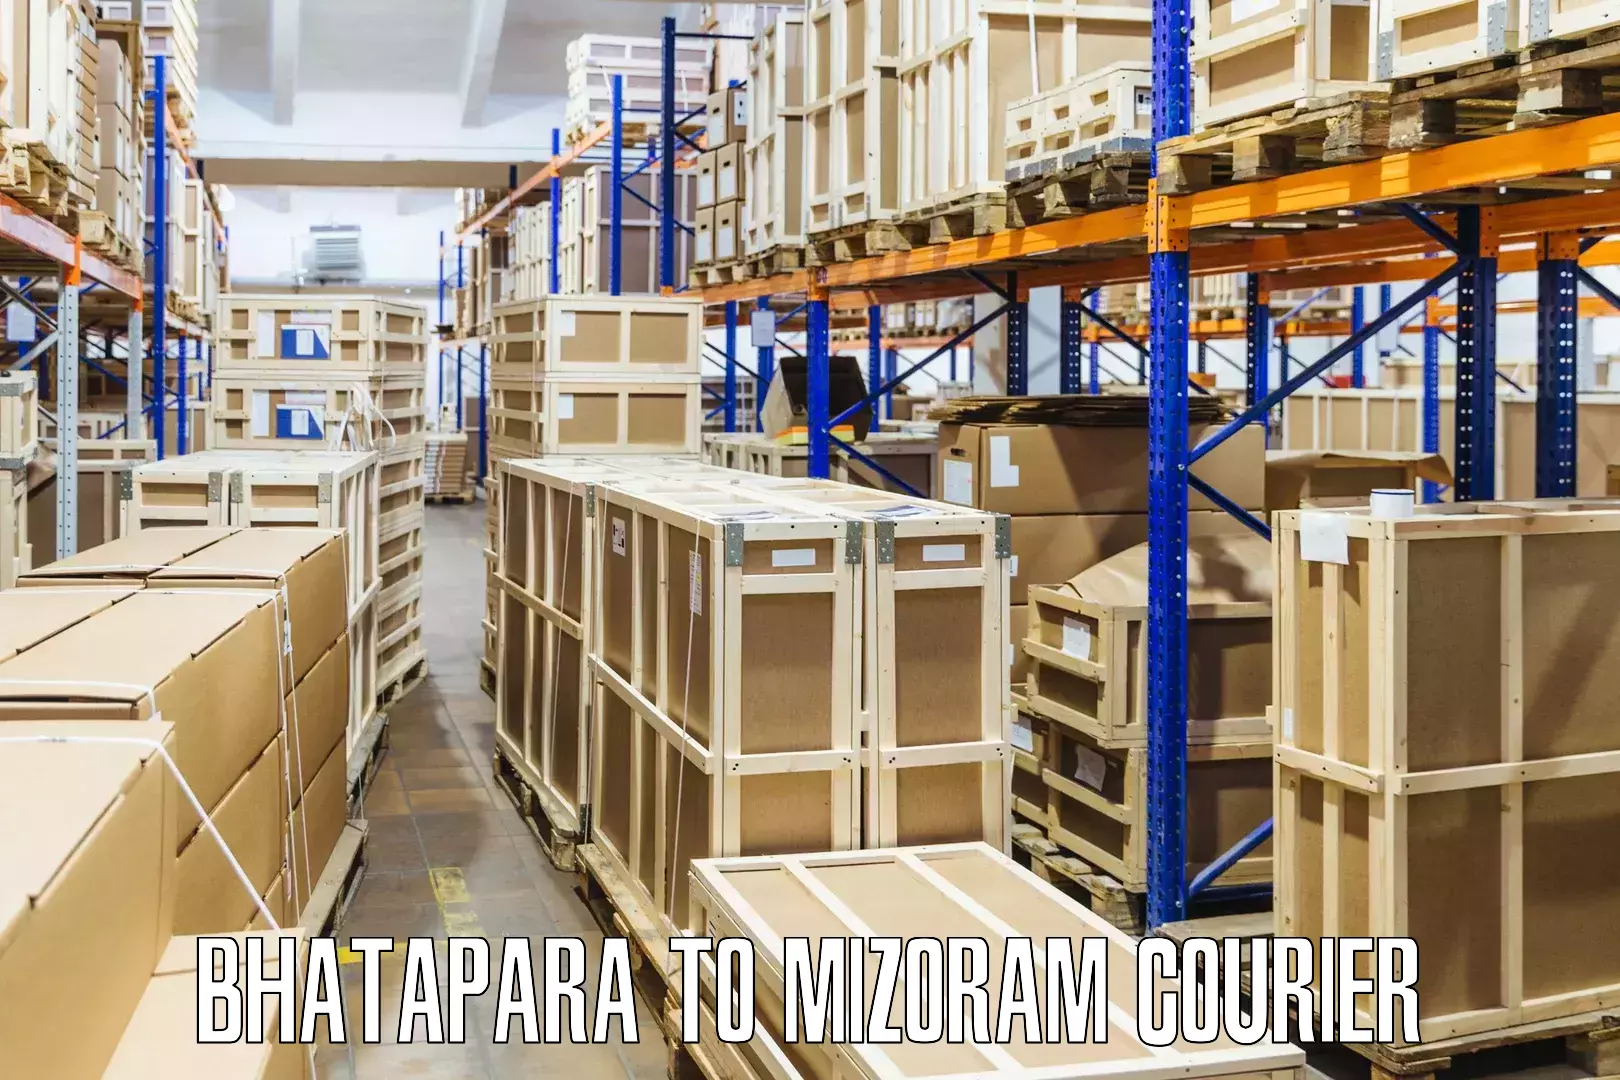 E-commerce shipping Bhatapara to Siaha